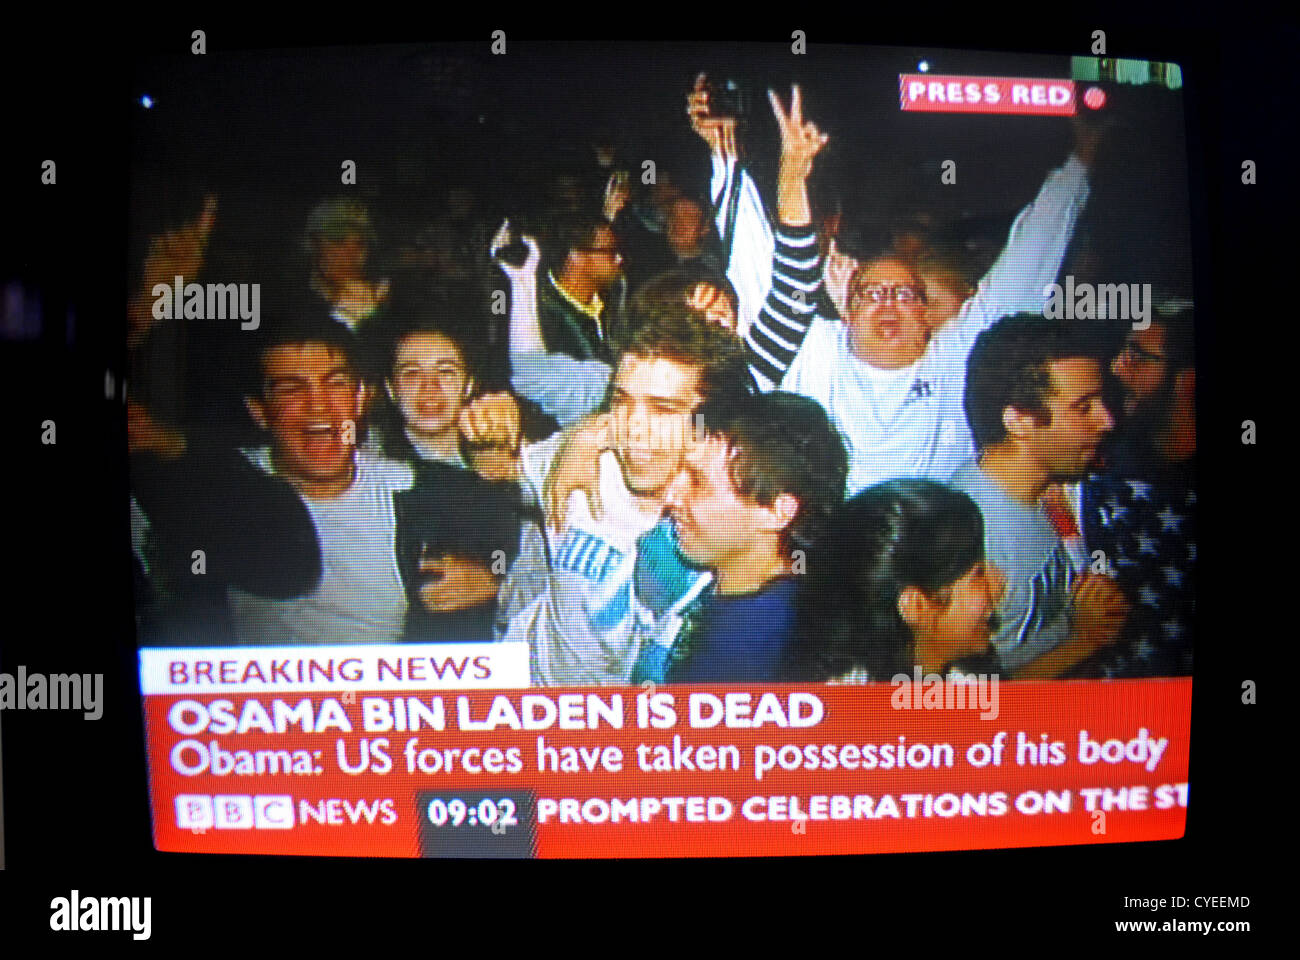 Ultime notizie, Osama Bin Laden è morto - 2 maggio 2011. News broadcast cattura dello schermo dalla BBC. Le celebrazioni in USA Foto Stock